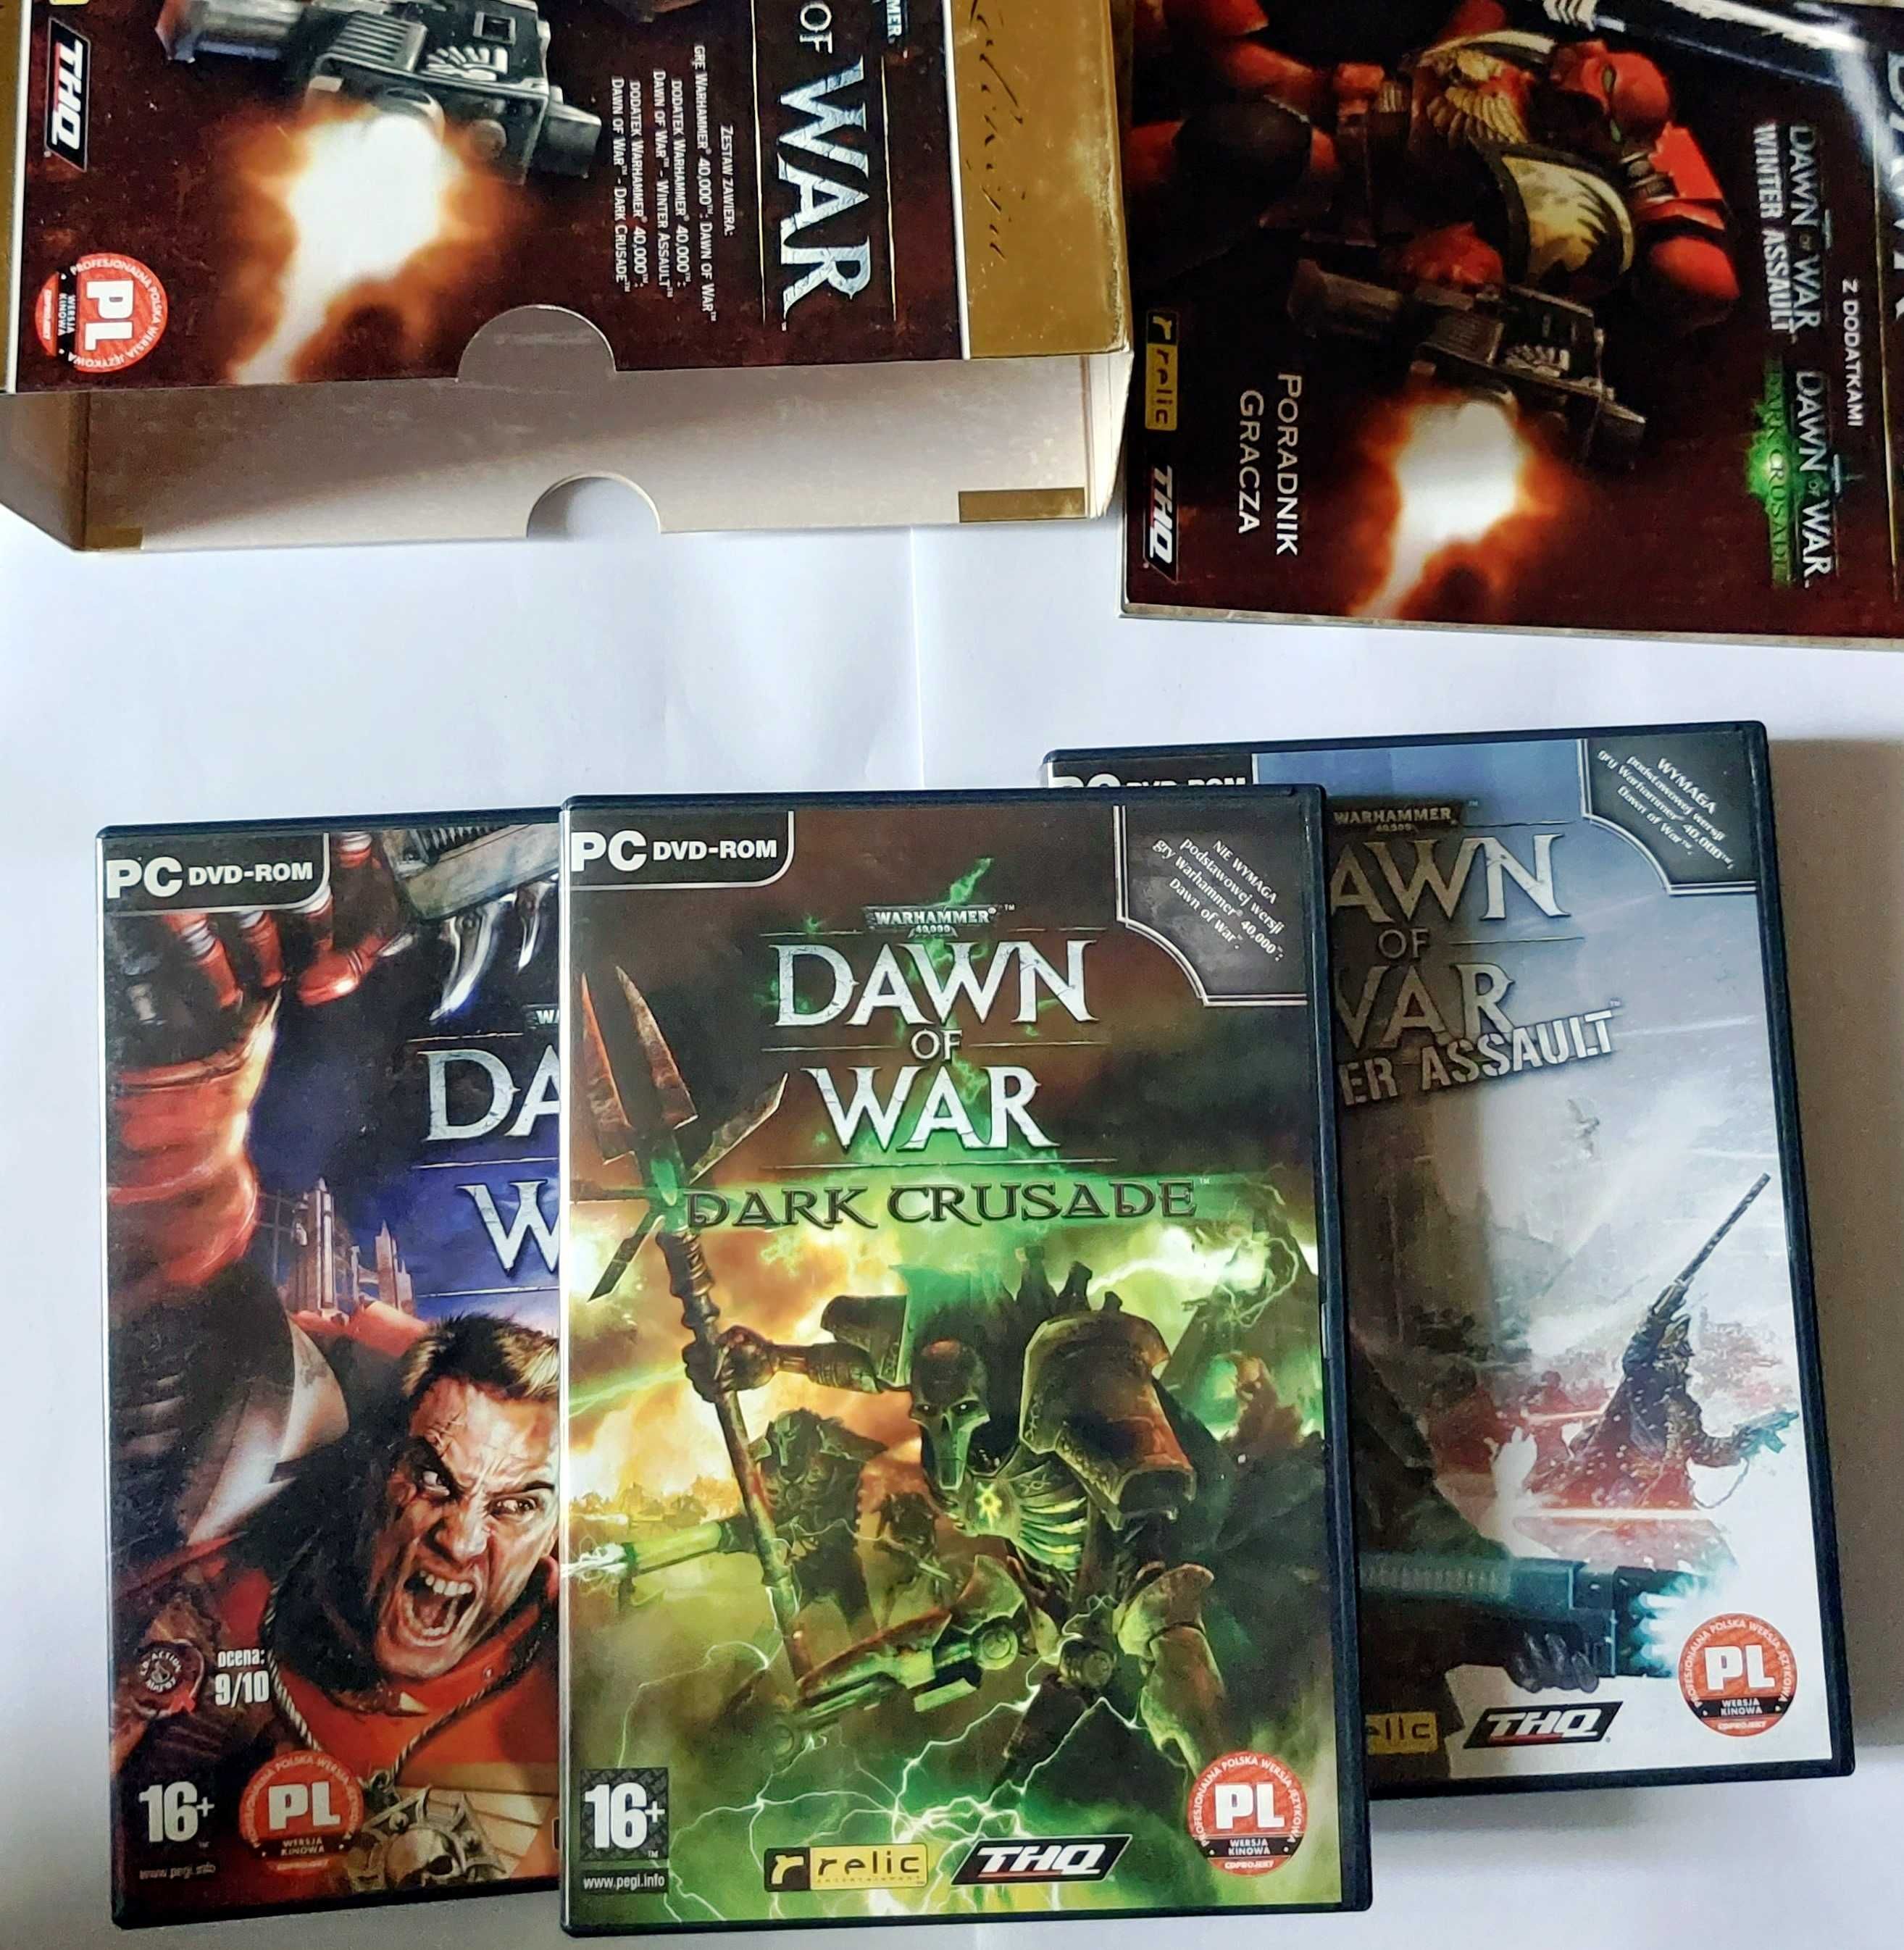 Warhammer 40000 | Dawn Of War: Złota Kolekcja | gra po polsku na PC